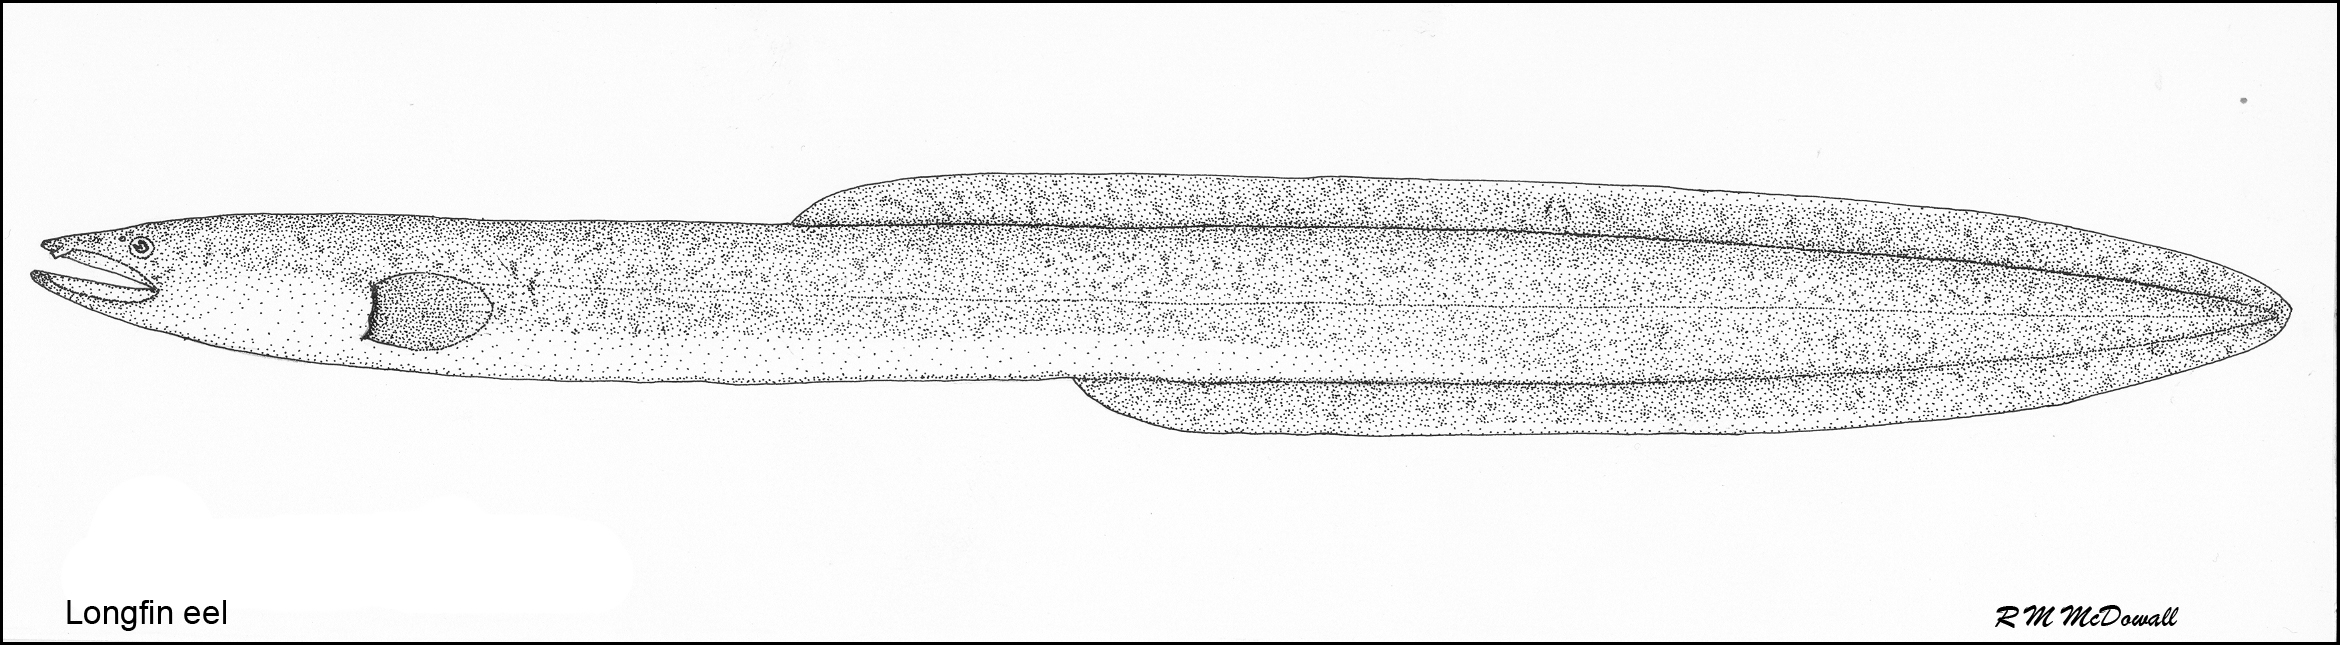 Long finned eel